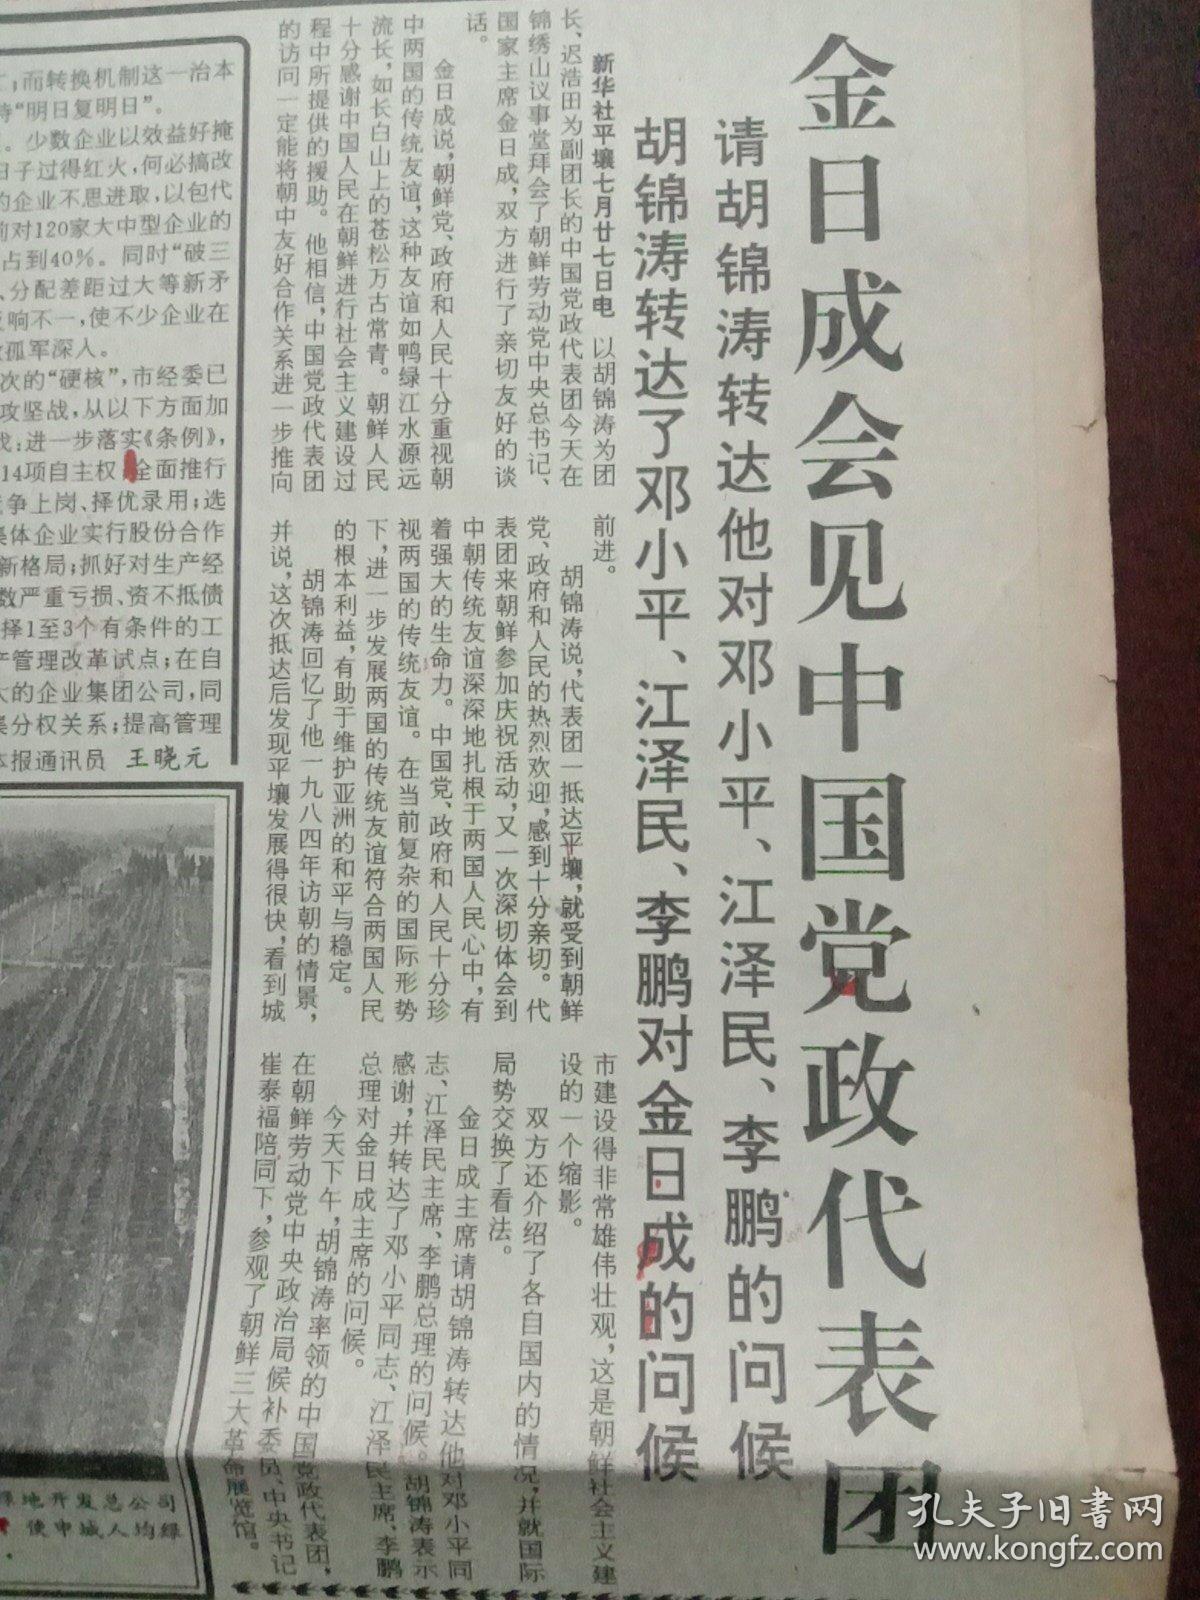 解放日报，1993年7月28日金日成会见中国党政代表团；中美信托金融大厦奠基；大猩猩试验人工授精；三峡移民大纲批准试行，对开12版（有1－8版）。